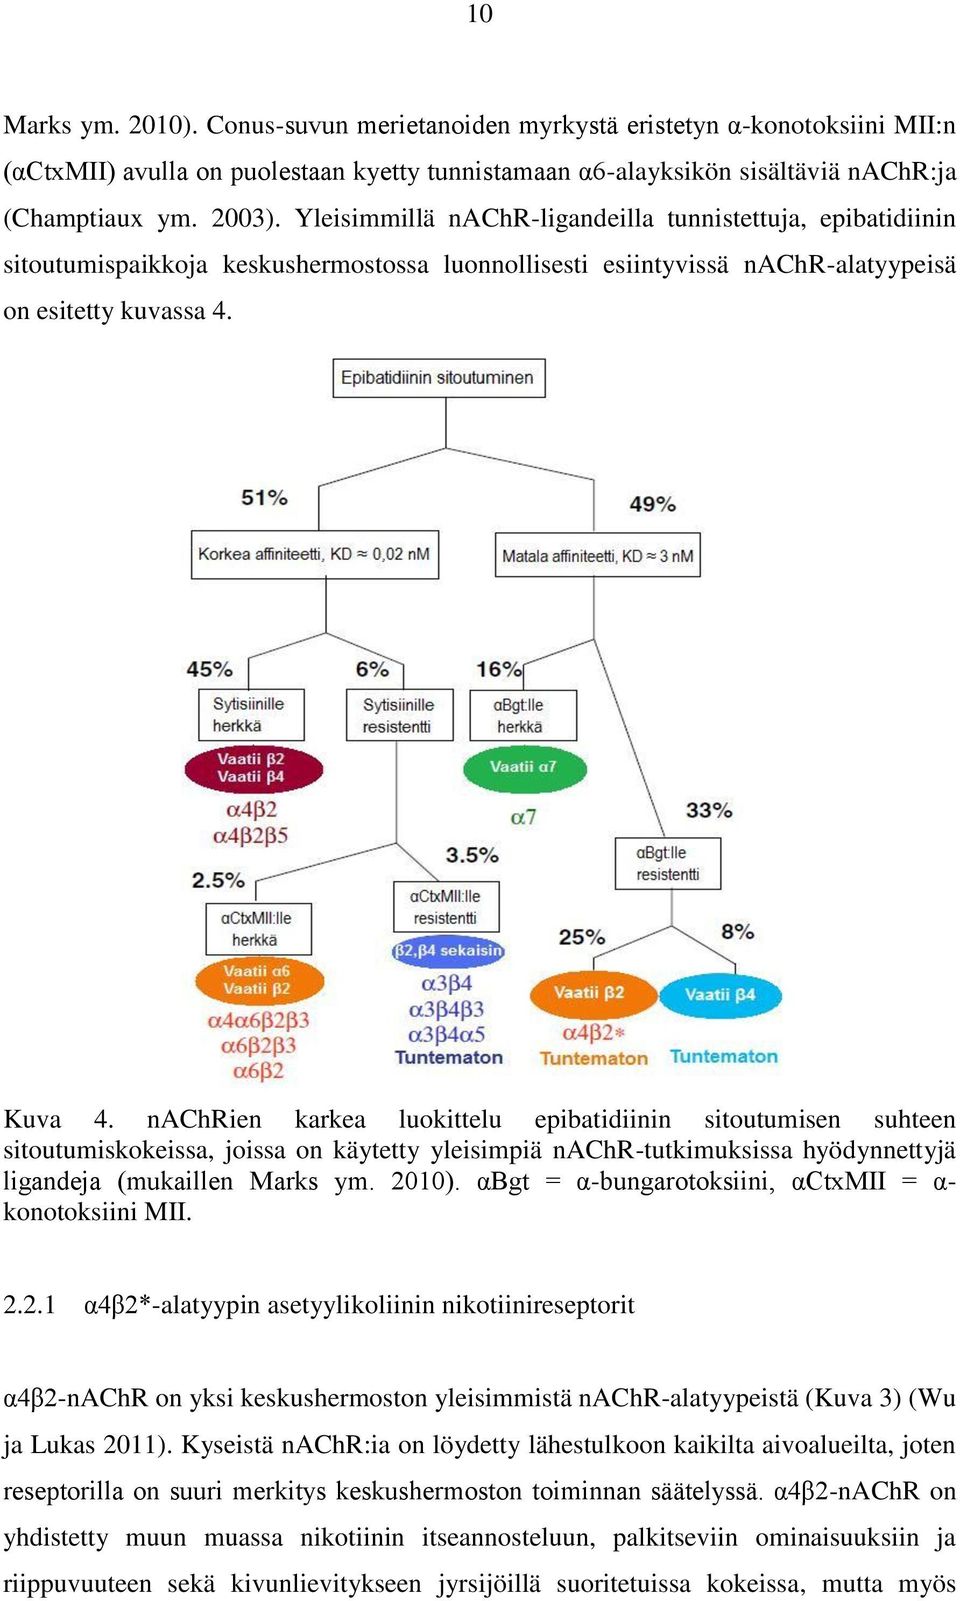 nachrien karkea luokittelu epibatidiinin sitoutumisen suhteen sitoutumiskokeissa, joissa on käytetty yleisimpiä nachr-tutkimuksissa hyödynnettyjä ligandeja (mukaillen Marks ym. 2010).